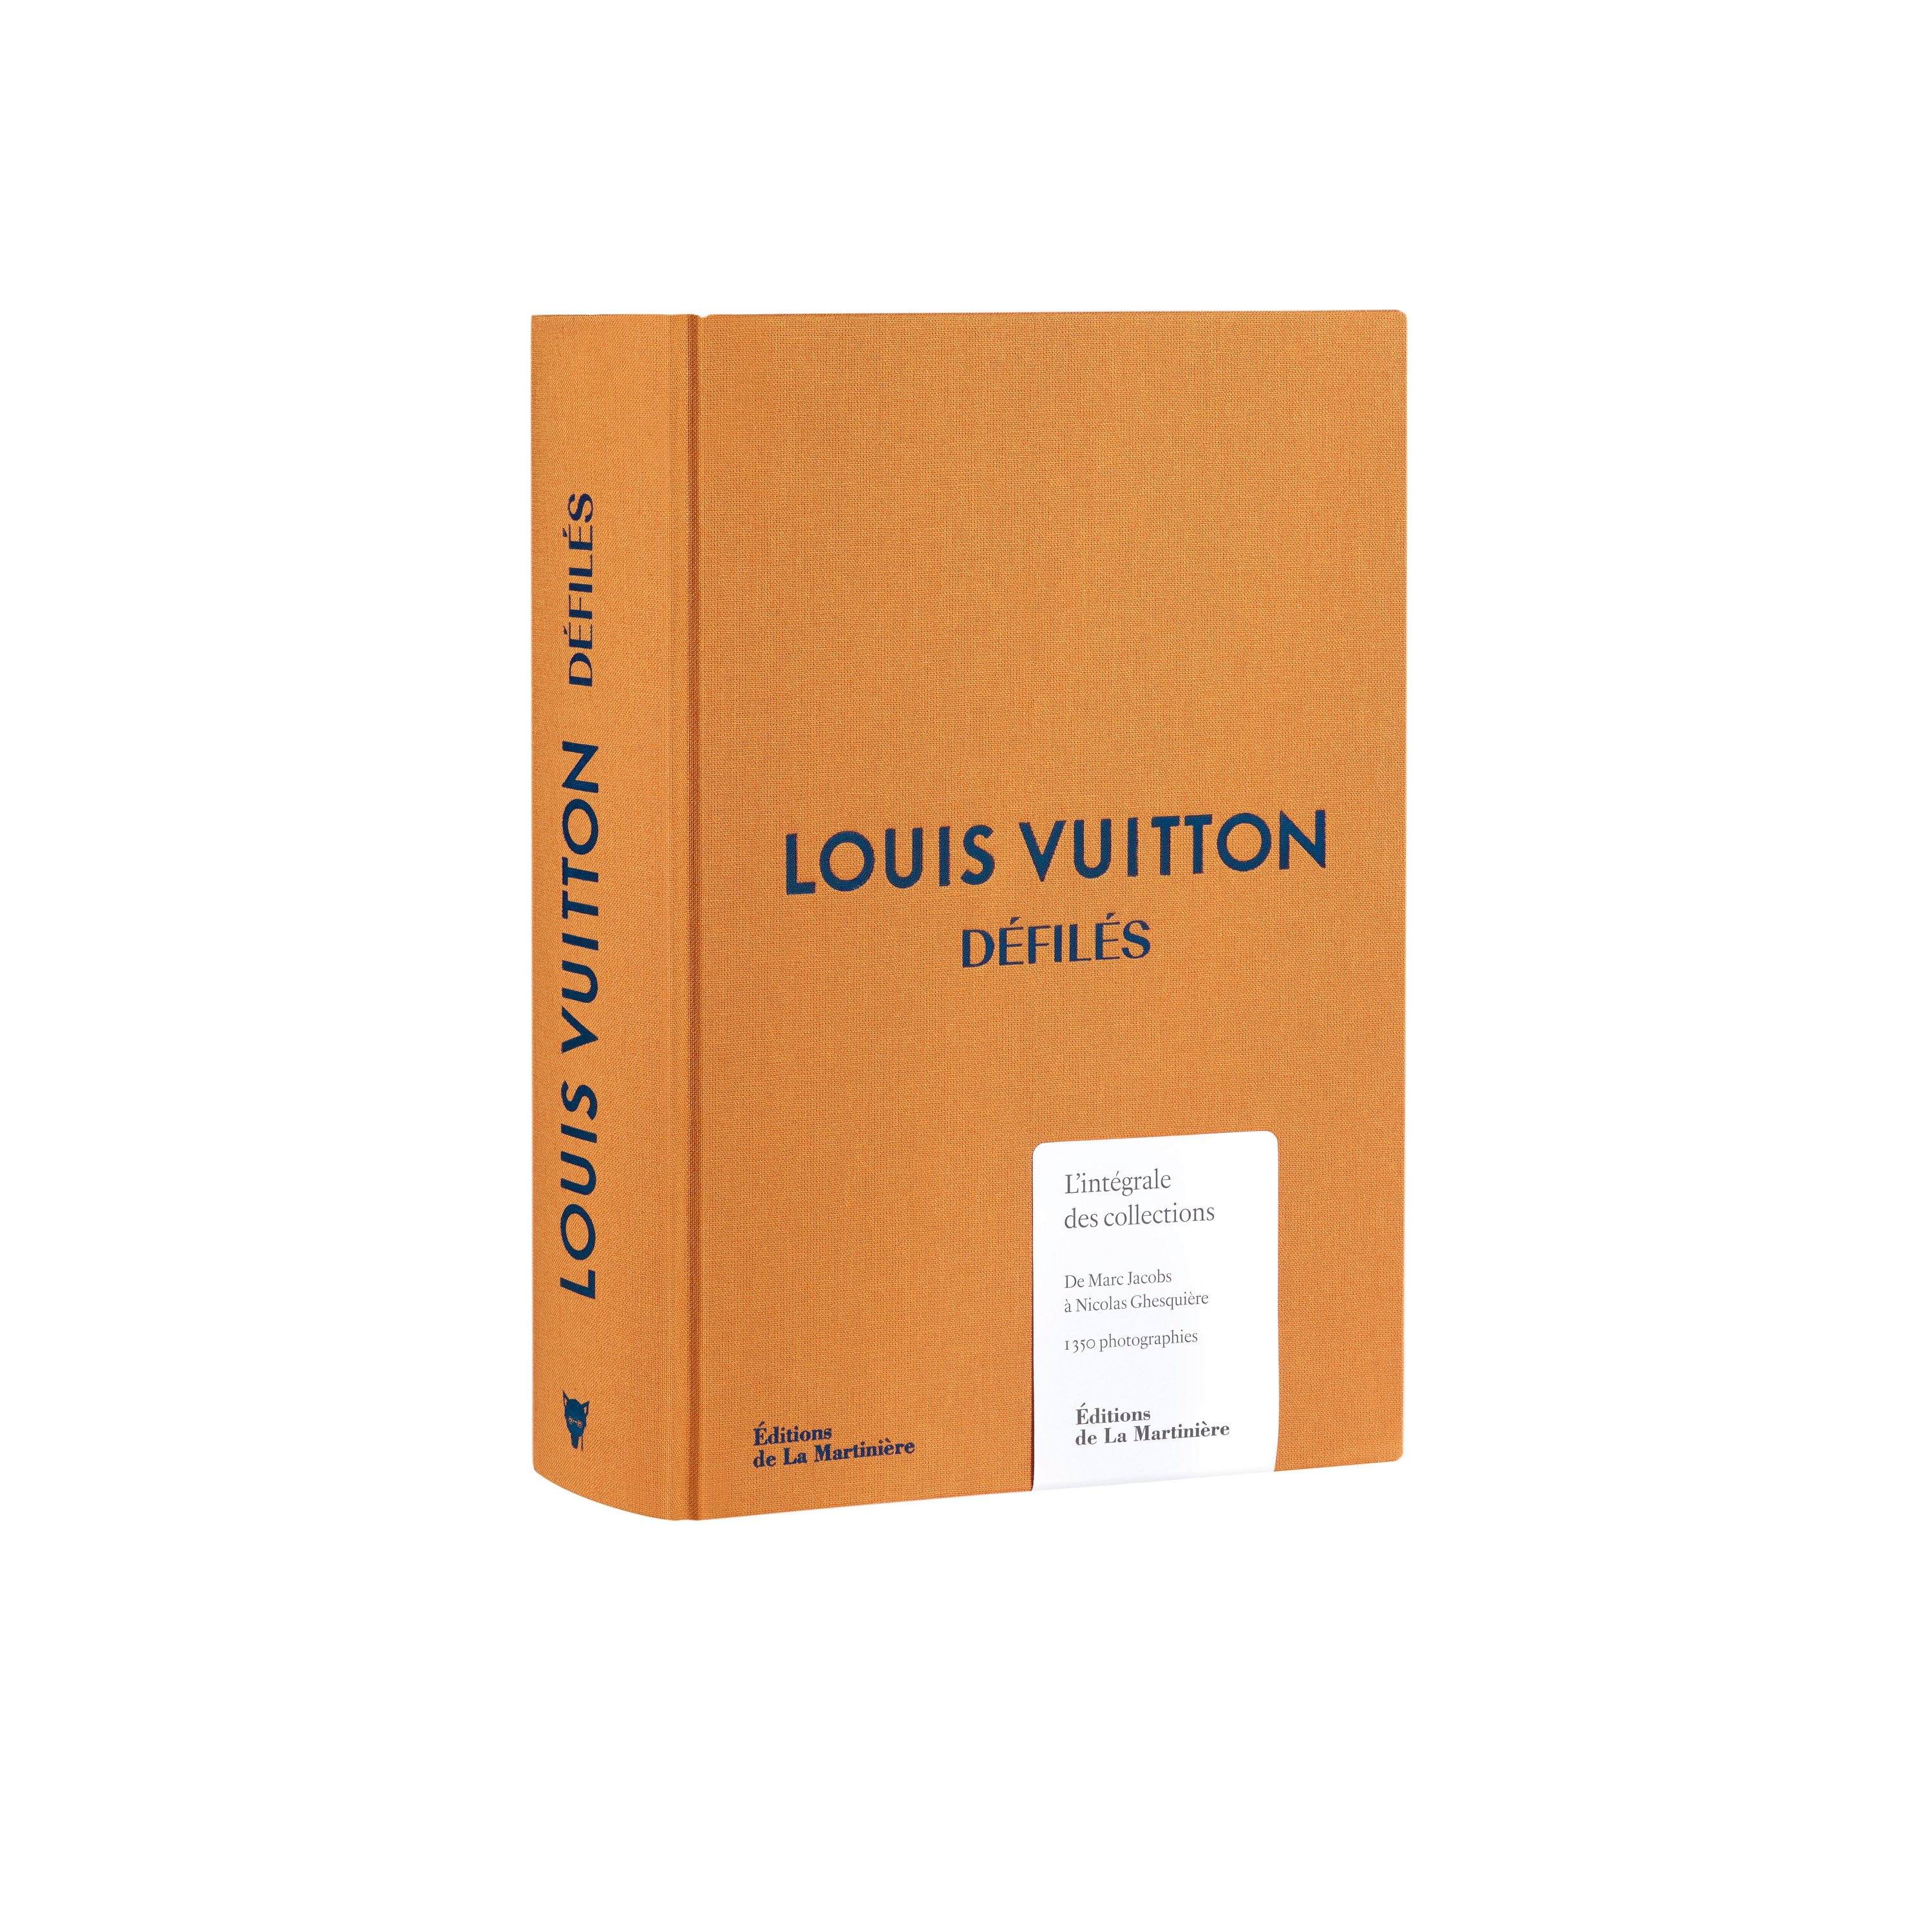 Louis Vuitton célèbre sa mode dans un livre